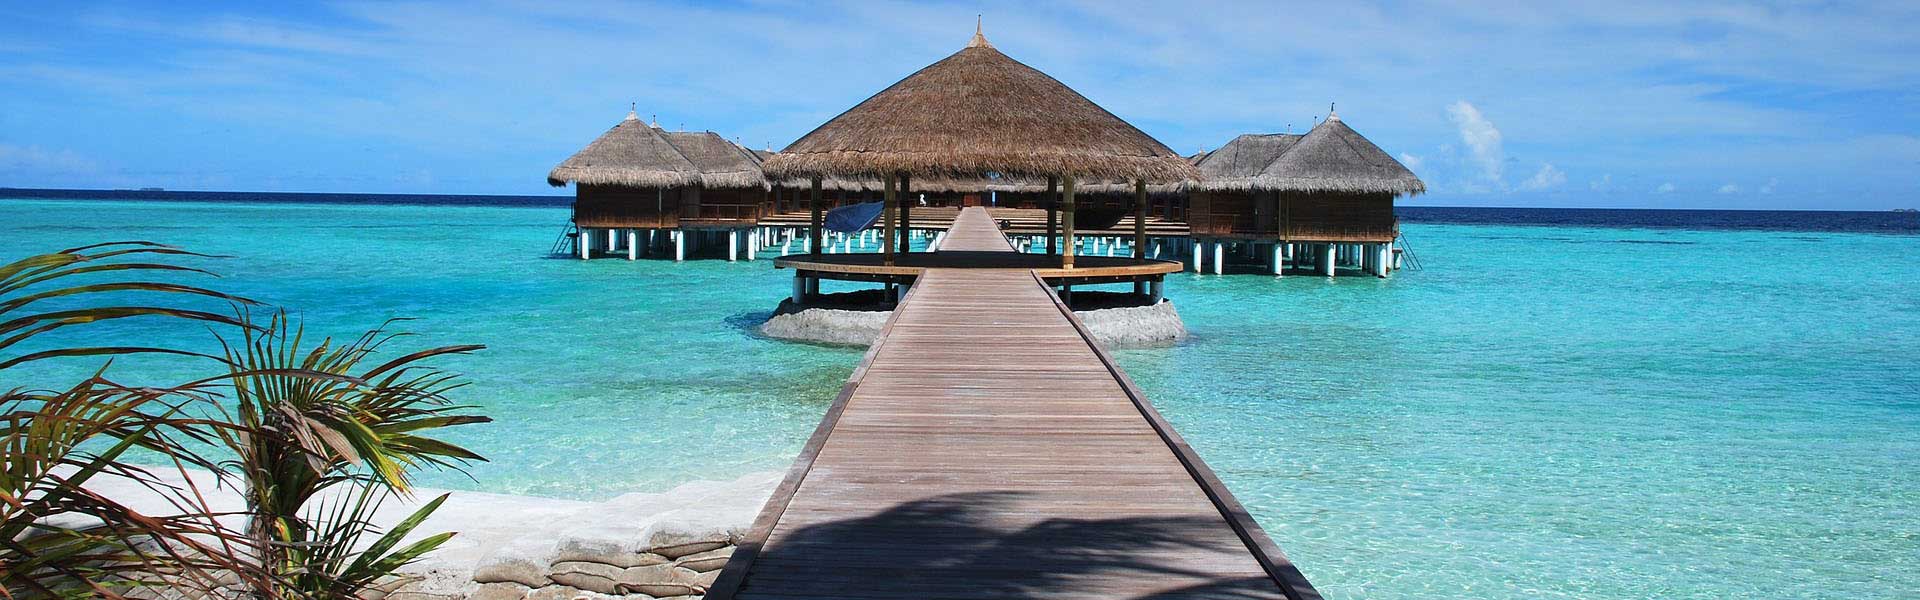 Voyage Maldives : Ponton menant vers des bungalow sur pilotis